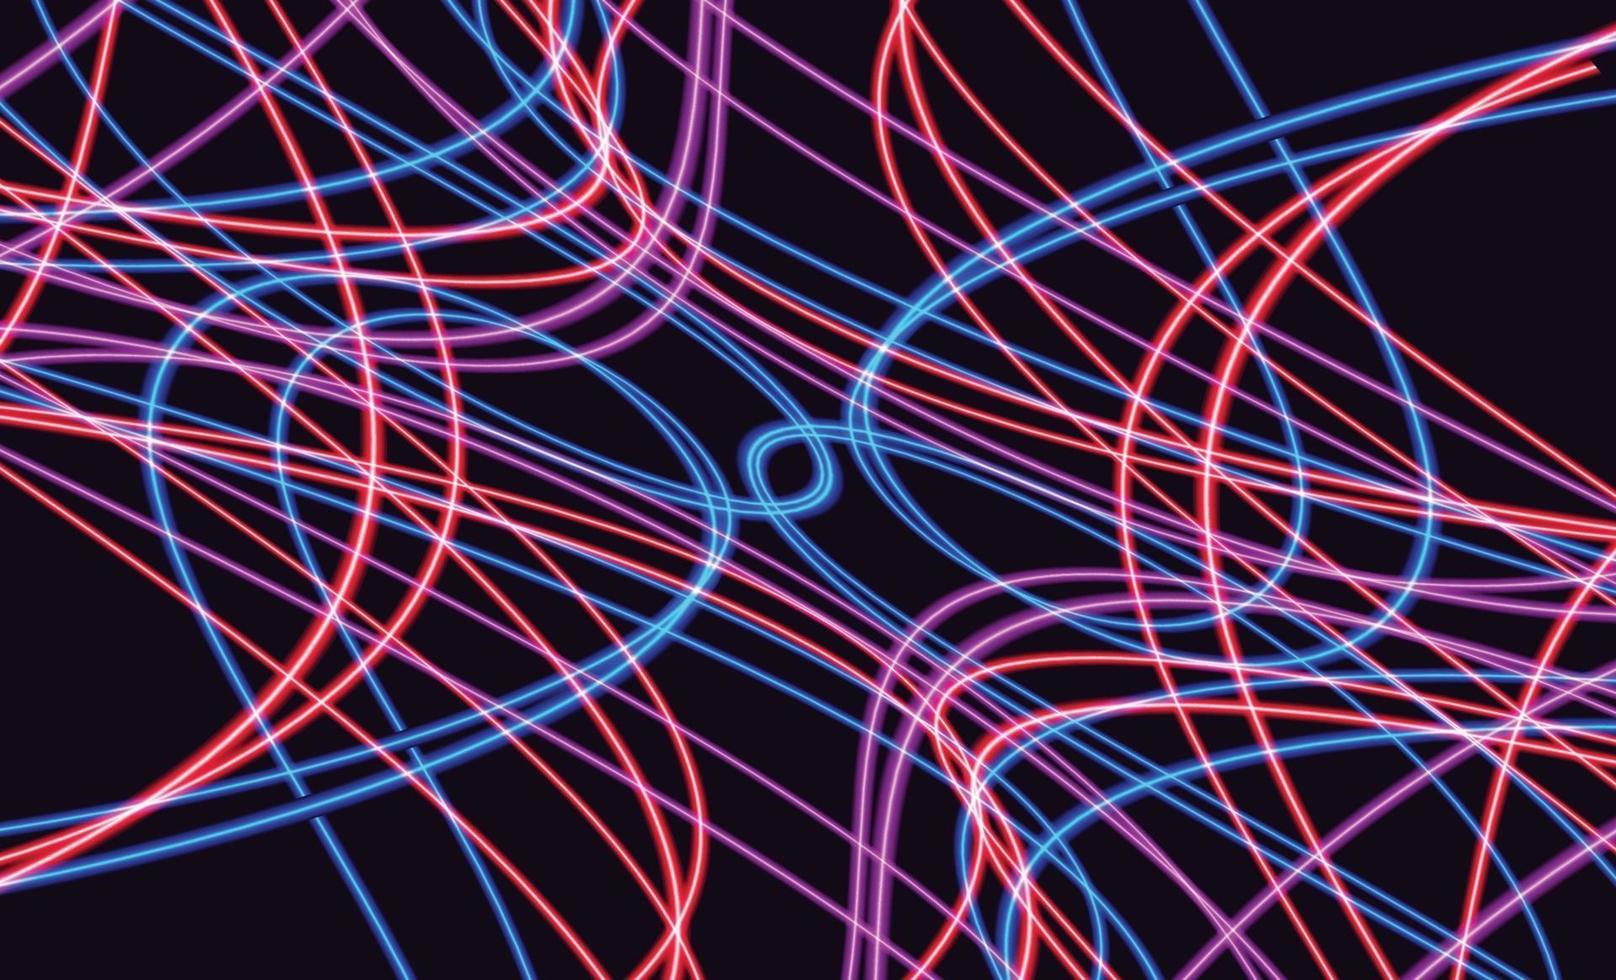 scie luminose colorate astratte con effetto motion blur. sfondo di velocità. concetto di luce. illustrazione vettoriale